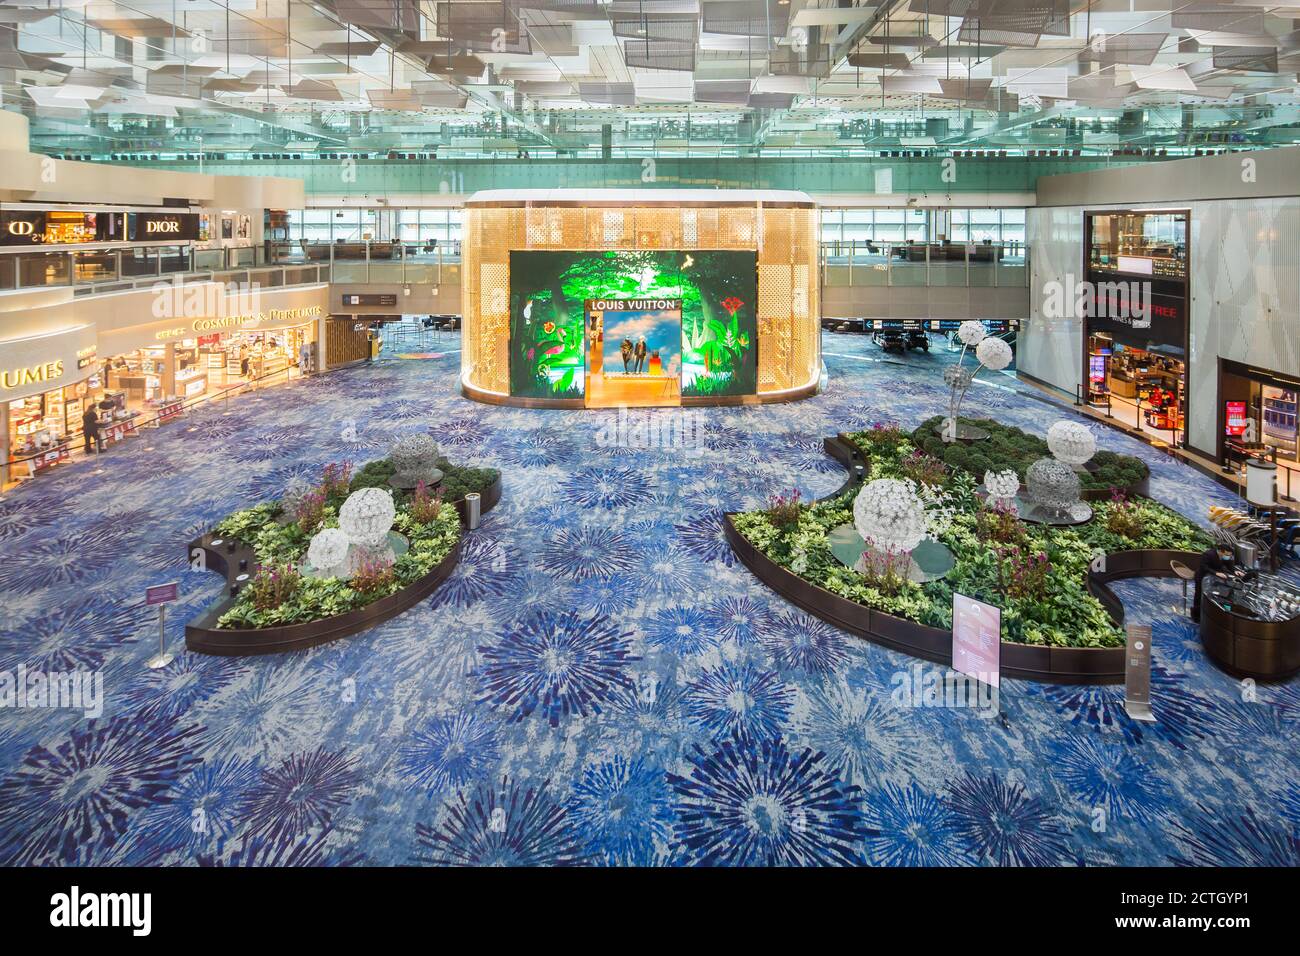 Una vista rara del área de tránsito de la Terminal 3 del Aeropuerto de Changi es tranquila. La tienda Louis Vuitton y otras tiendas libres de impuestos son tranquilas. Foto de stock